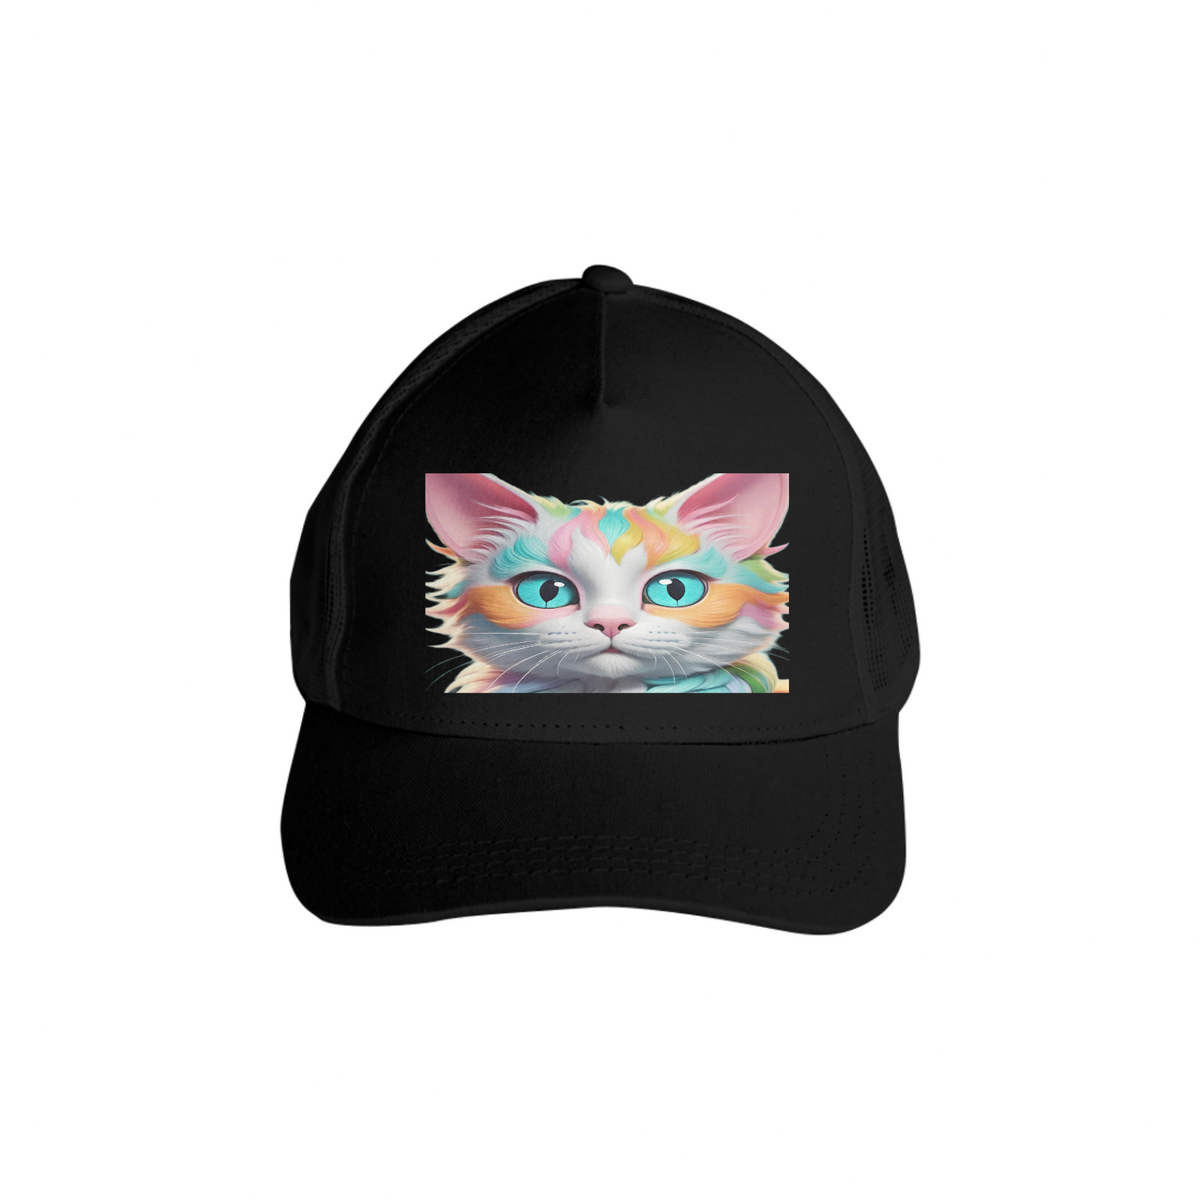 Nome do produto: Boné gato arco iris